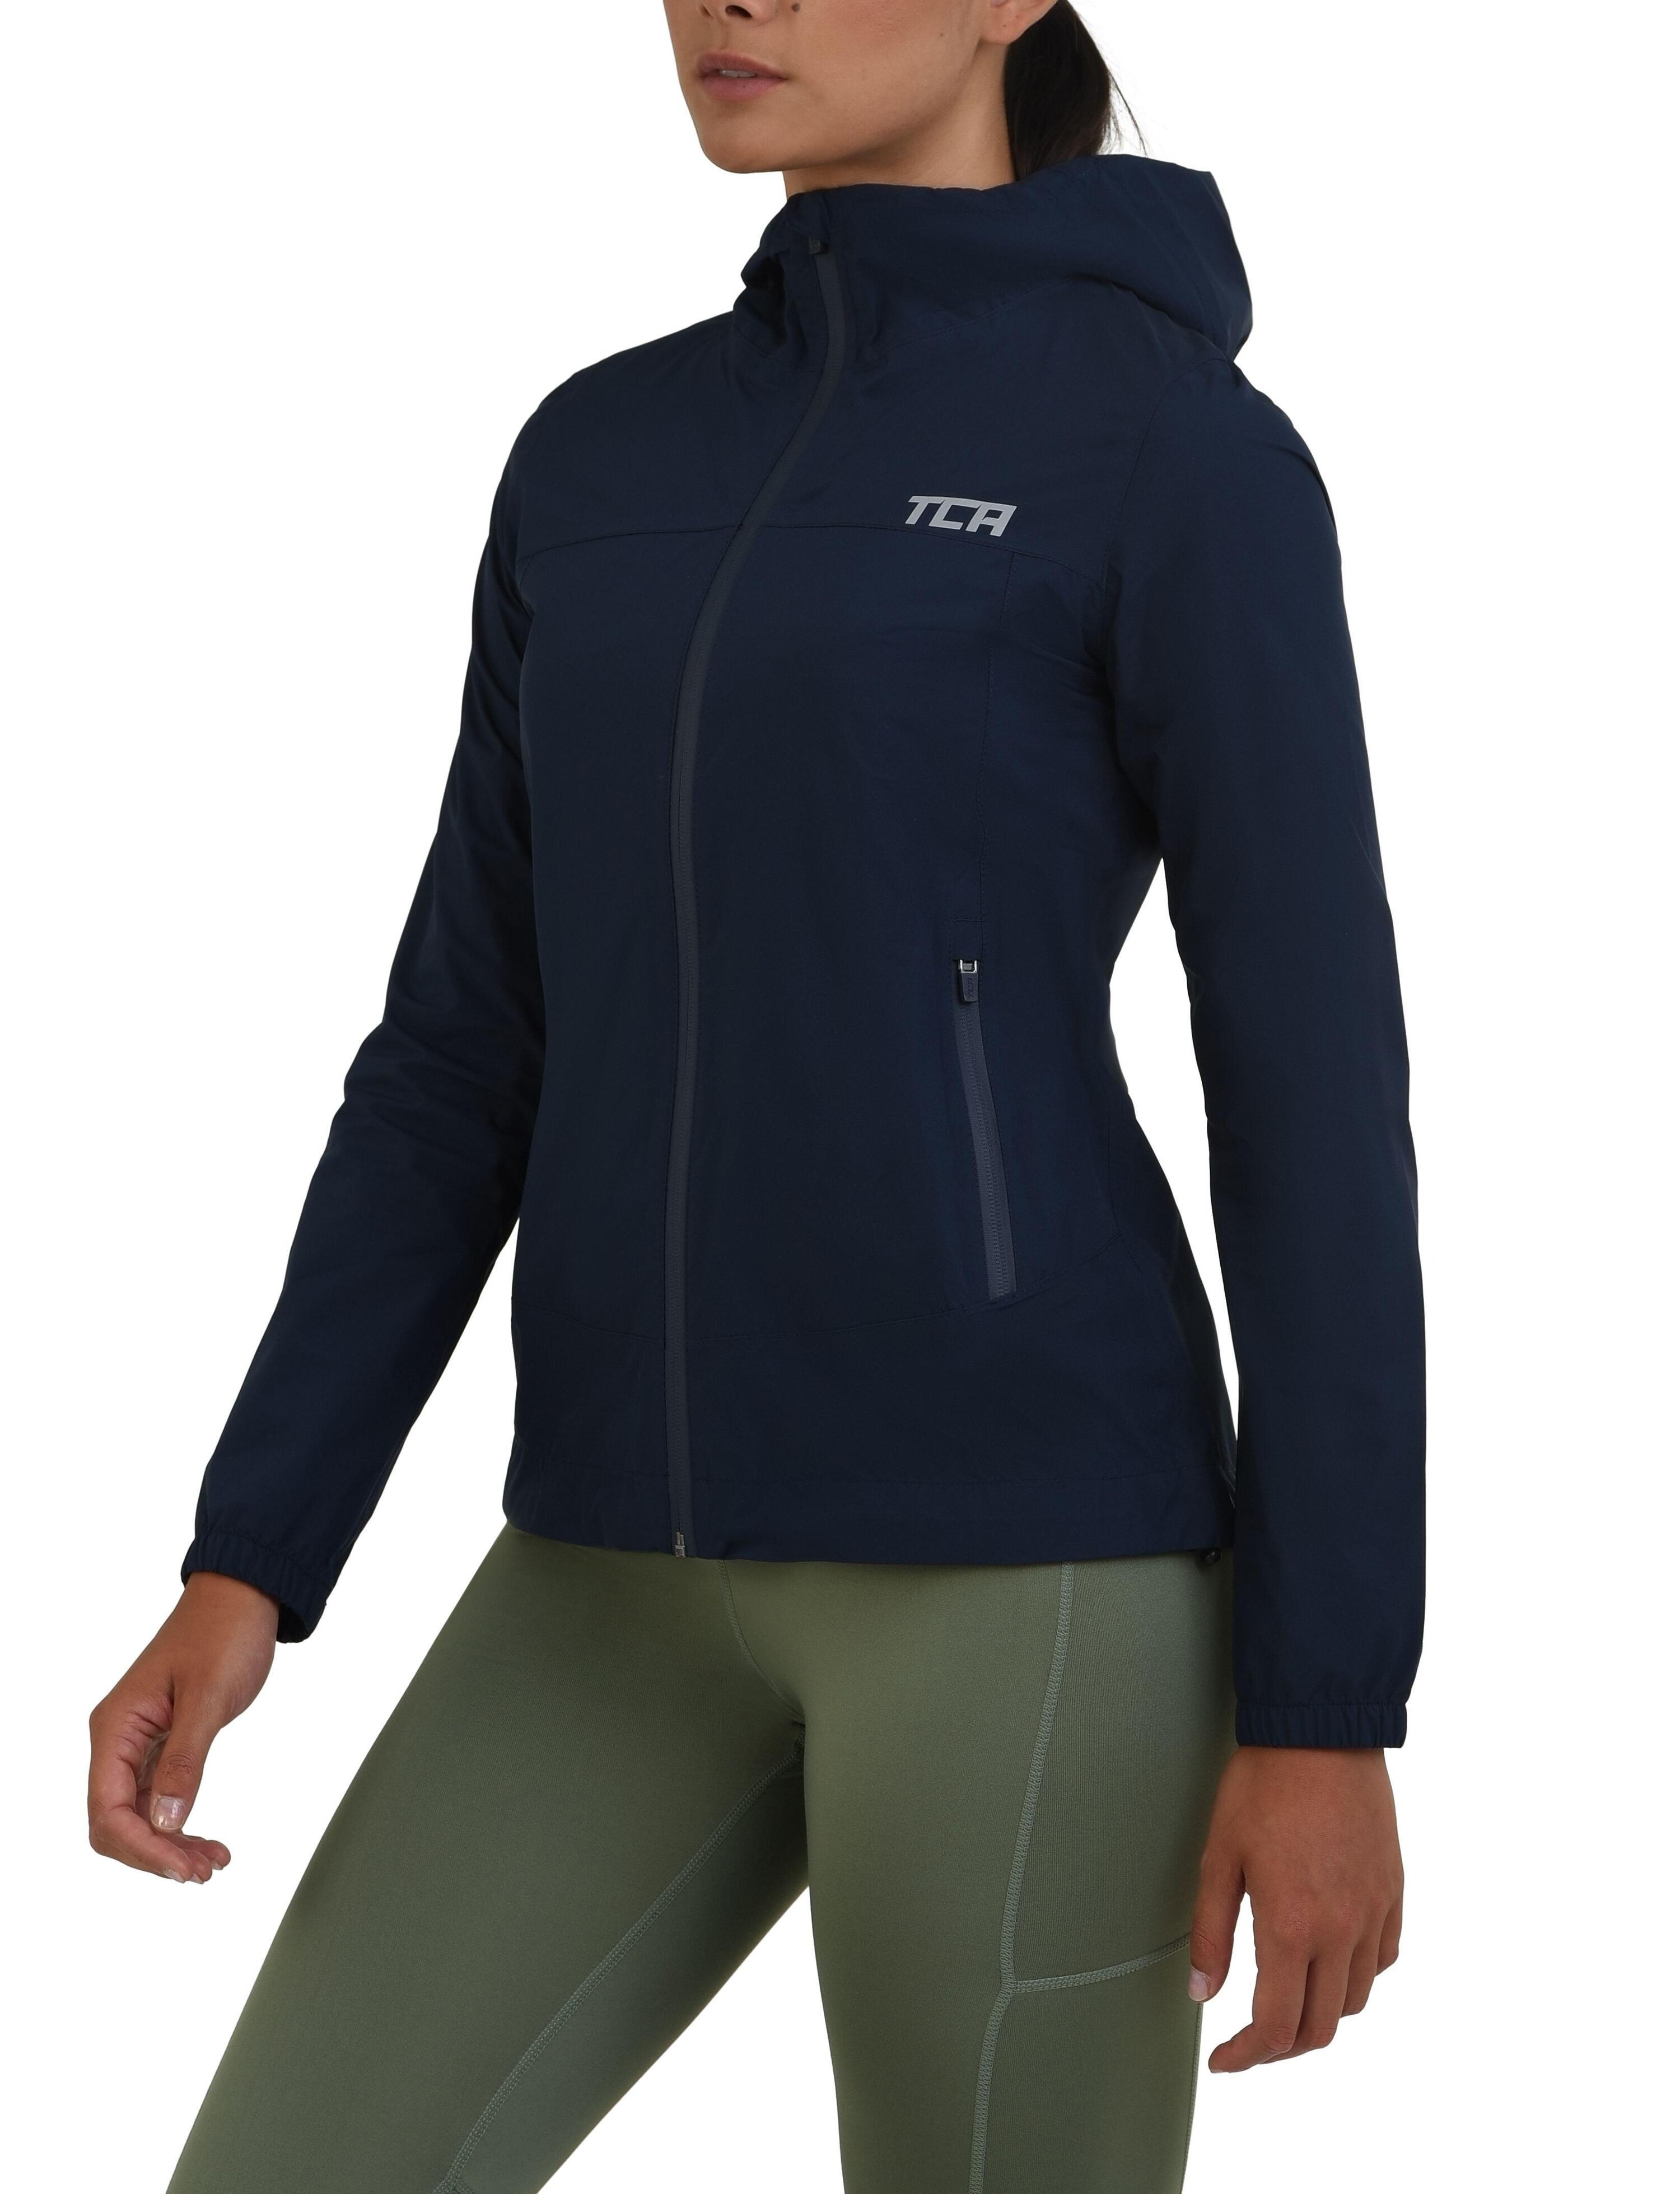 Women's AirLite Rain Jacket with Zip Pockets - Navy Blazer 2/4